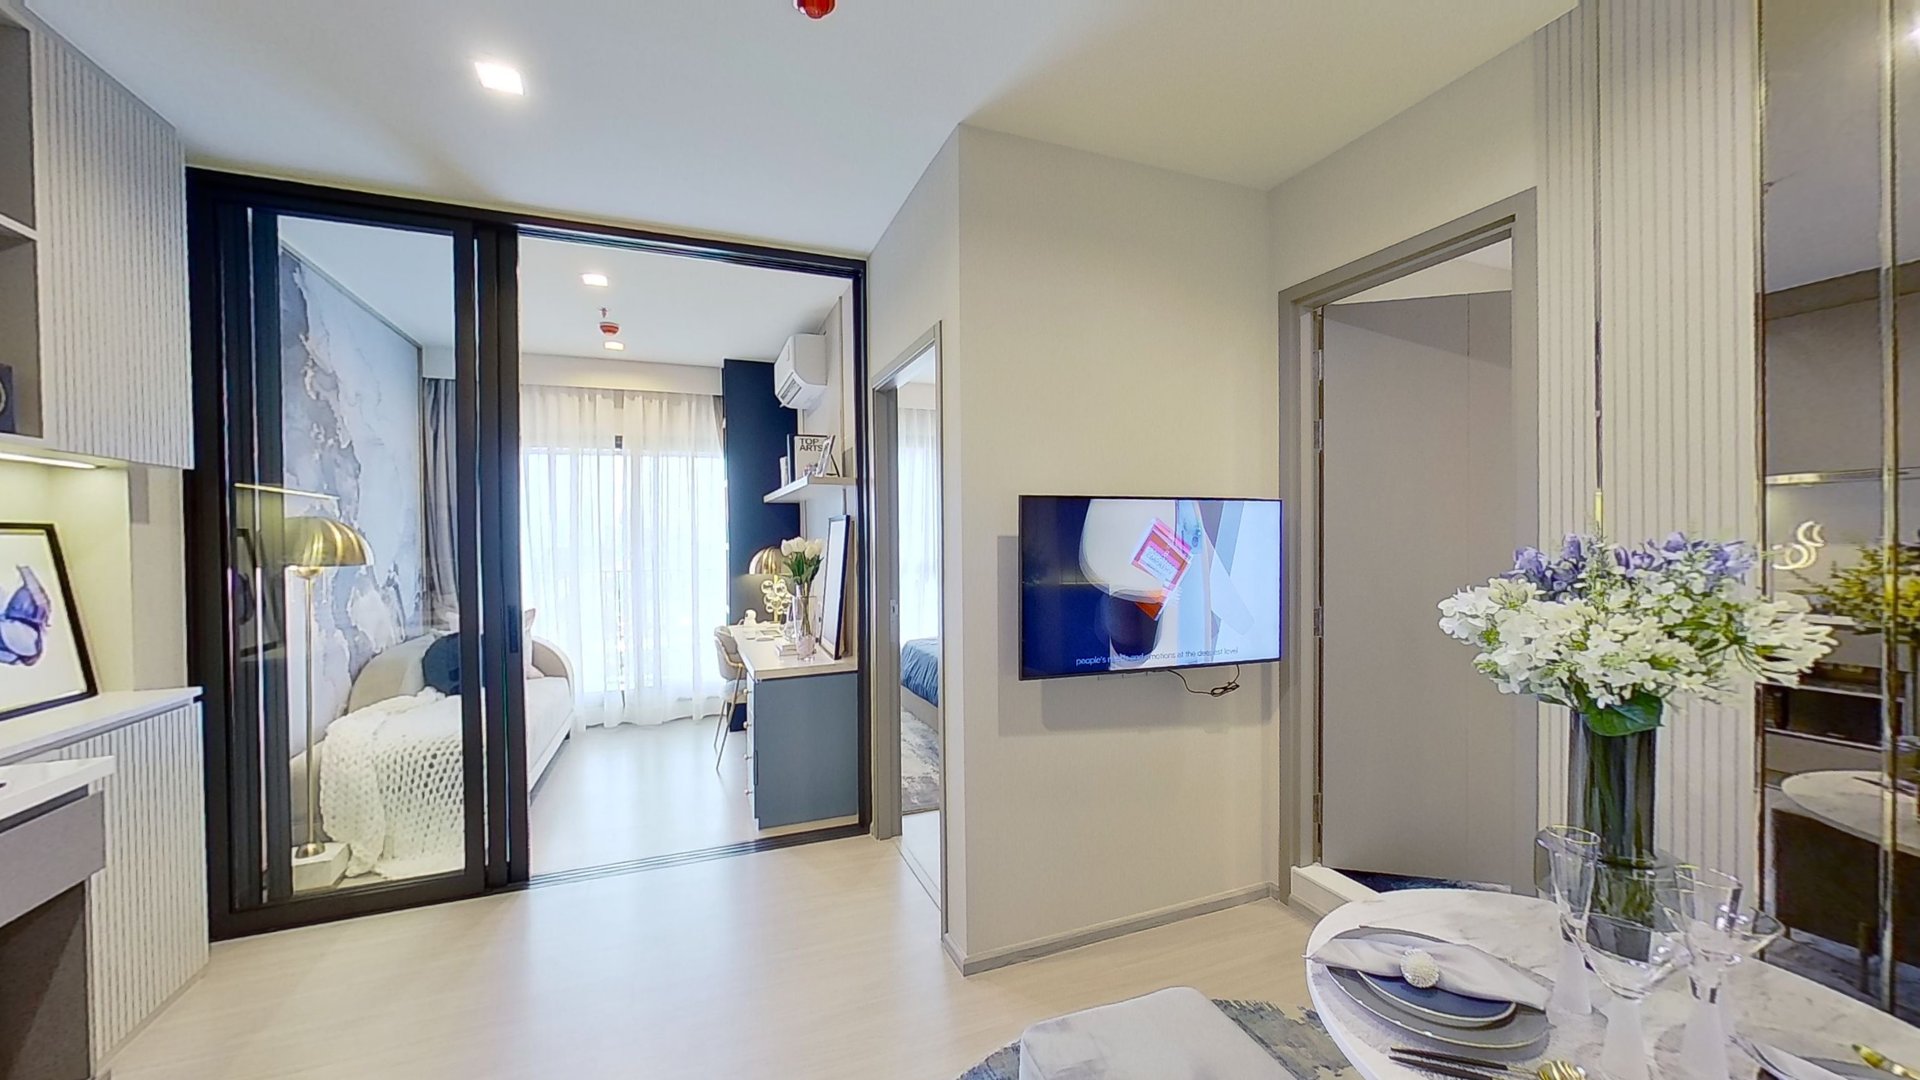 ขายคอนโดพระราม 9 เพชรบุรีตัดใหม่ RCA : ห้อง ONE Bed Plus(35ตรม) ราคาถูกที่สุด ตรมละ 124,000บาท !!! ฟรีค่าใช้จ่ายวันโอน++++